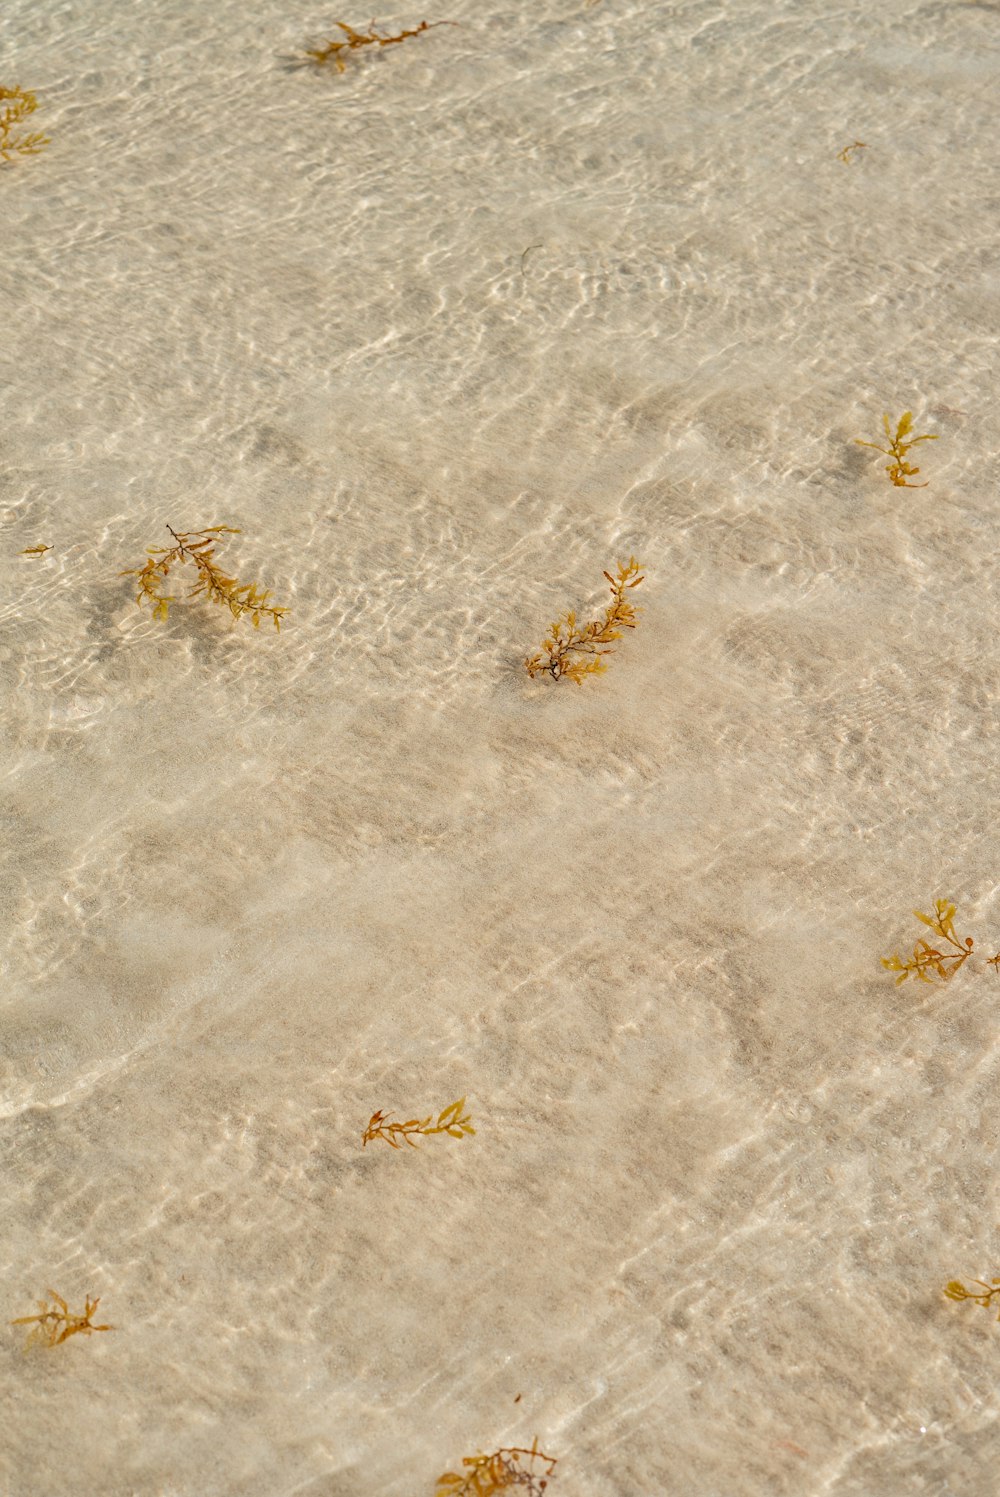 砂浜に浮かぶ海藻群